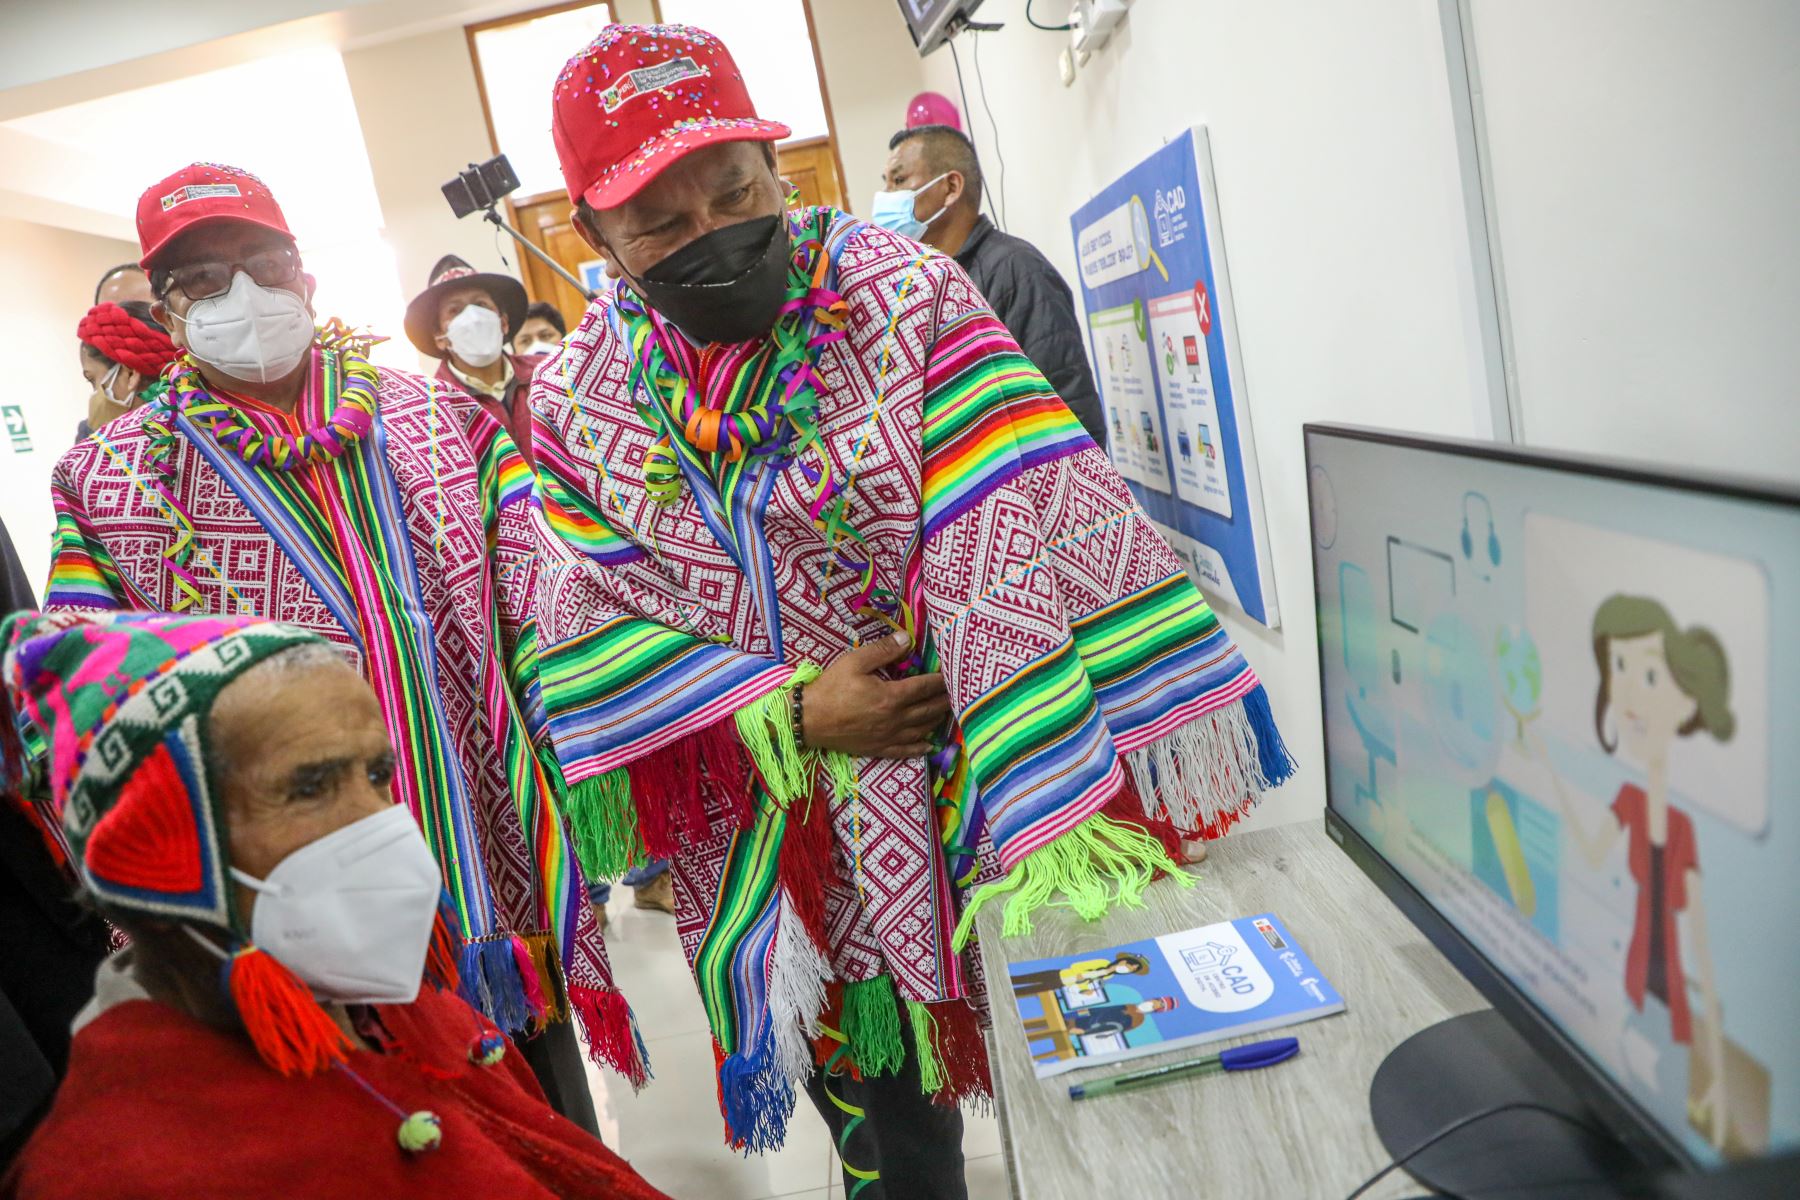 Cusco El ministro Juan Silva inauguró el primer Centro de Acceso Digital (CAD) de la región, en el distrito de Huaro, provincia de Quispicanchi. A fines de este año, se tiene previsto contar con 22 CAD que beneficiarán a 12,122 ciudadanos de las localidades rurales de Cusco. Foto: MTC